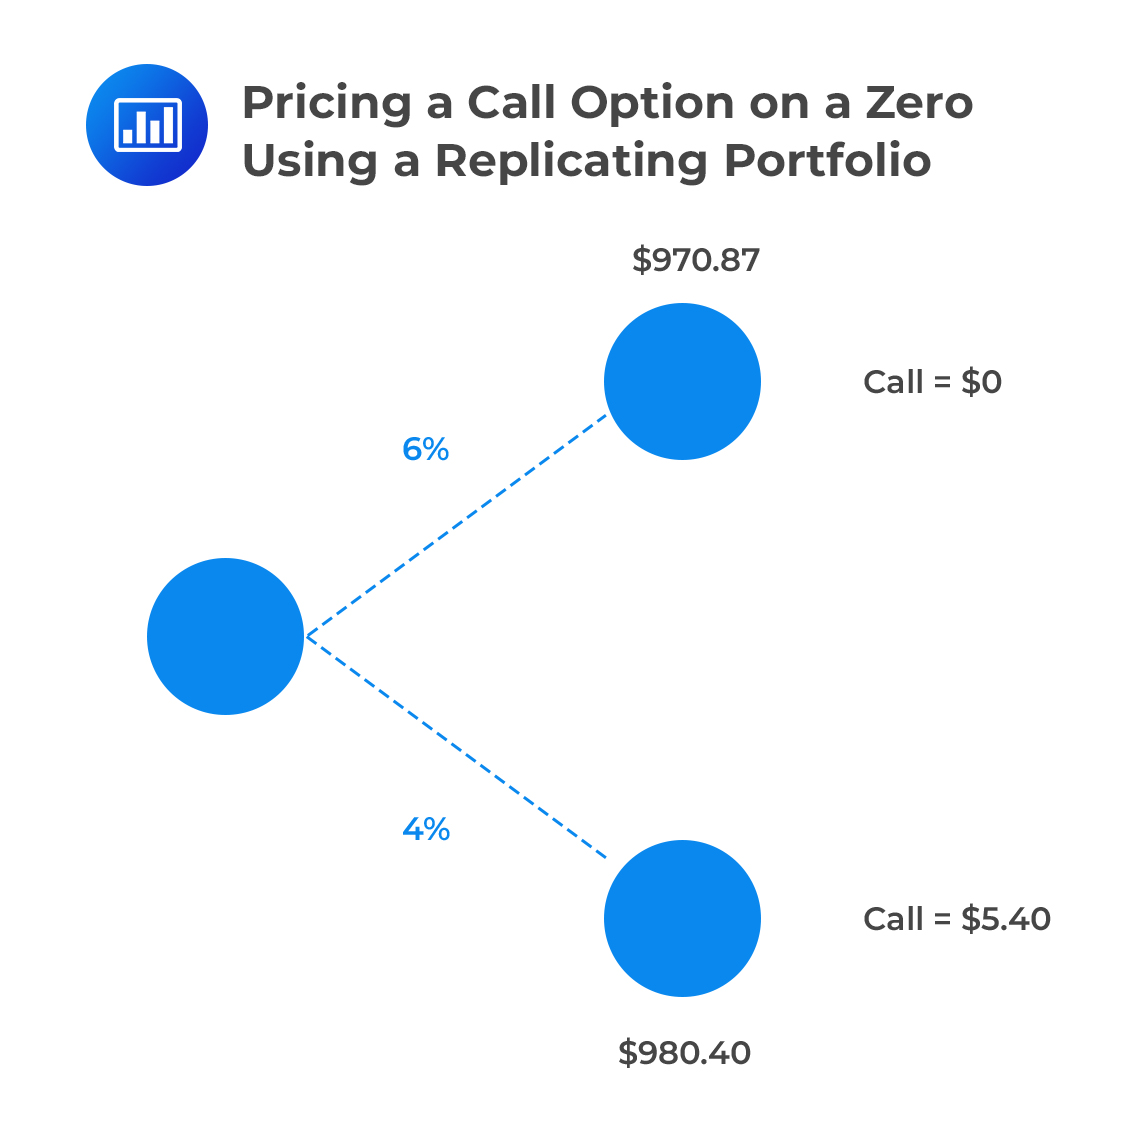 Pricing a Call Option on a Zero Using a Replicating Portfolio